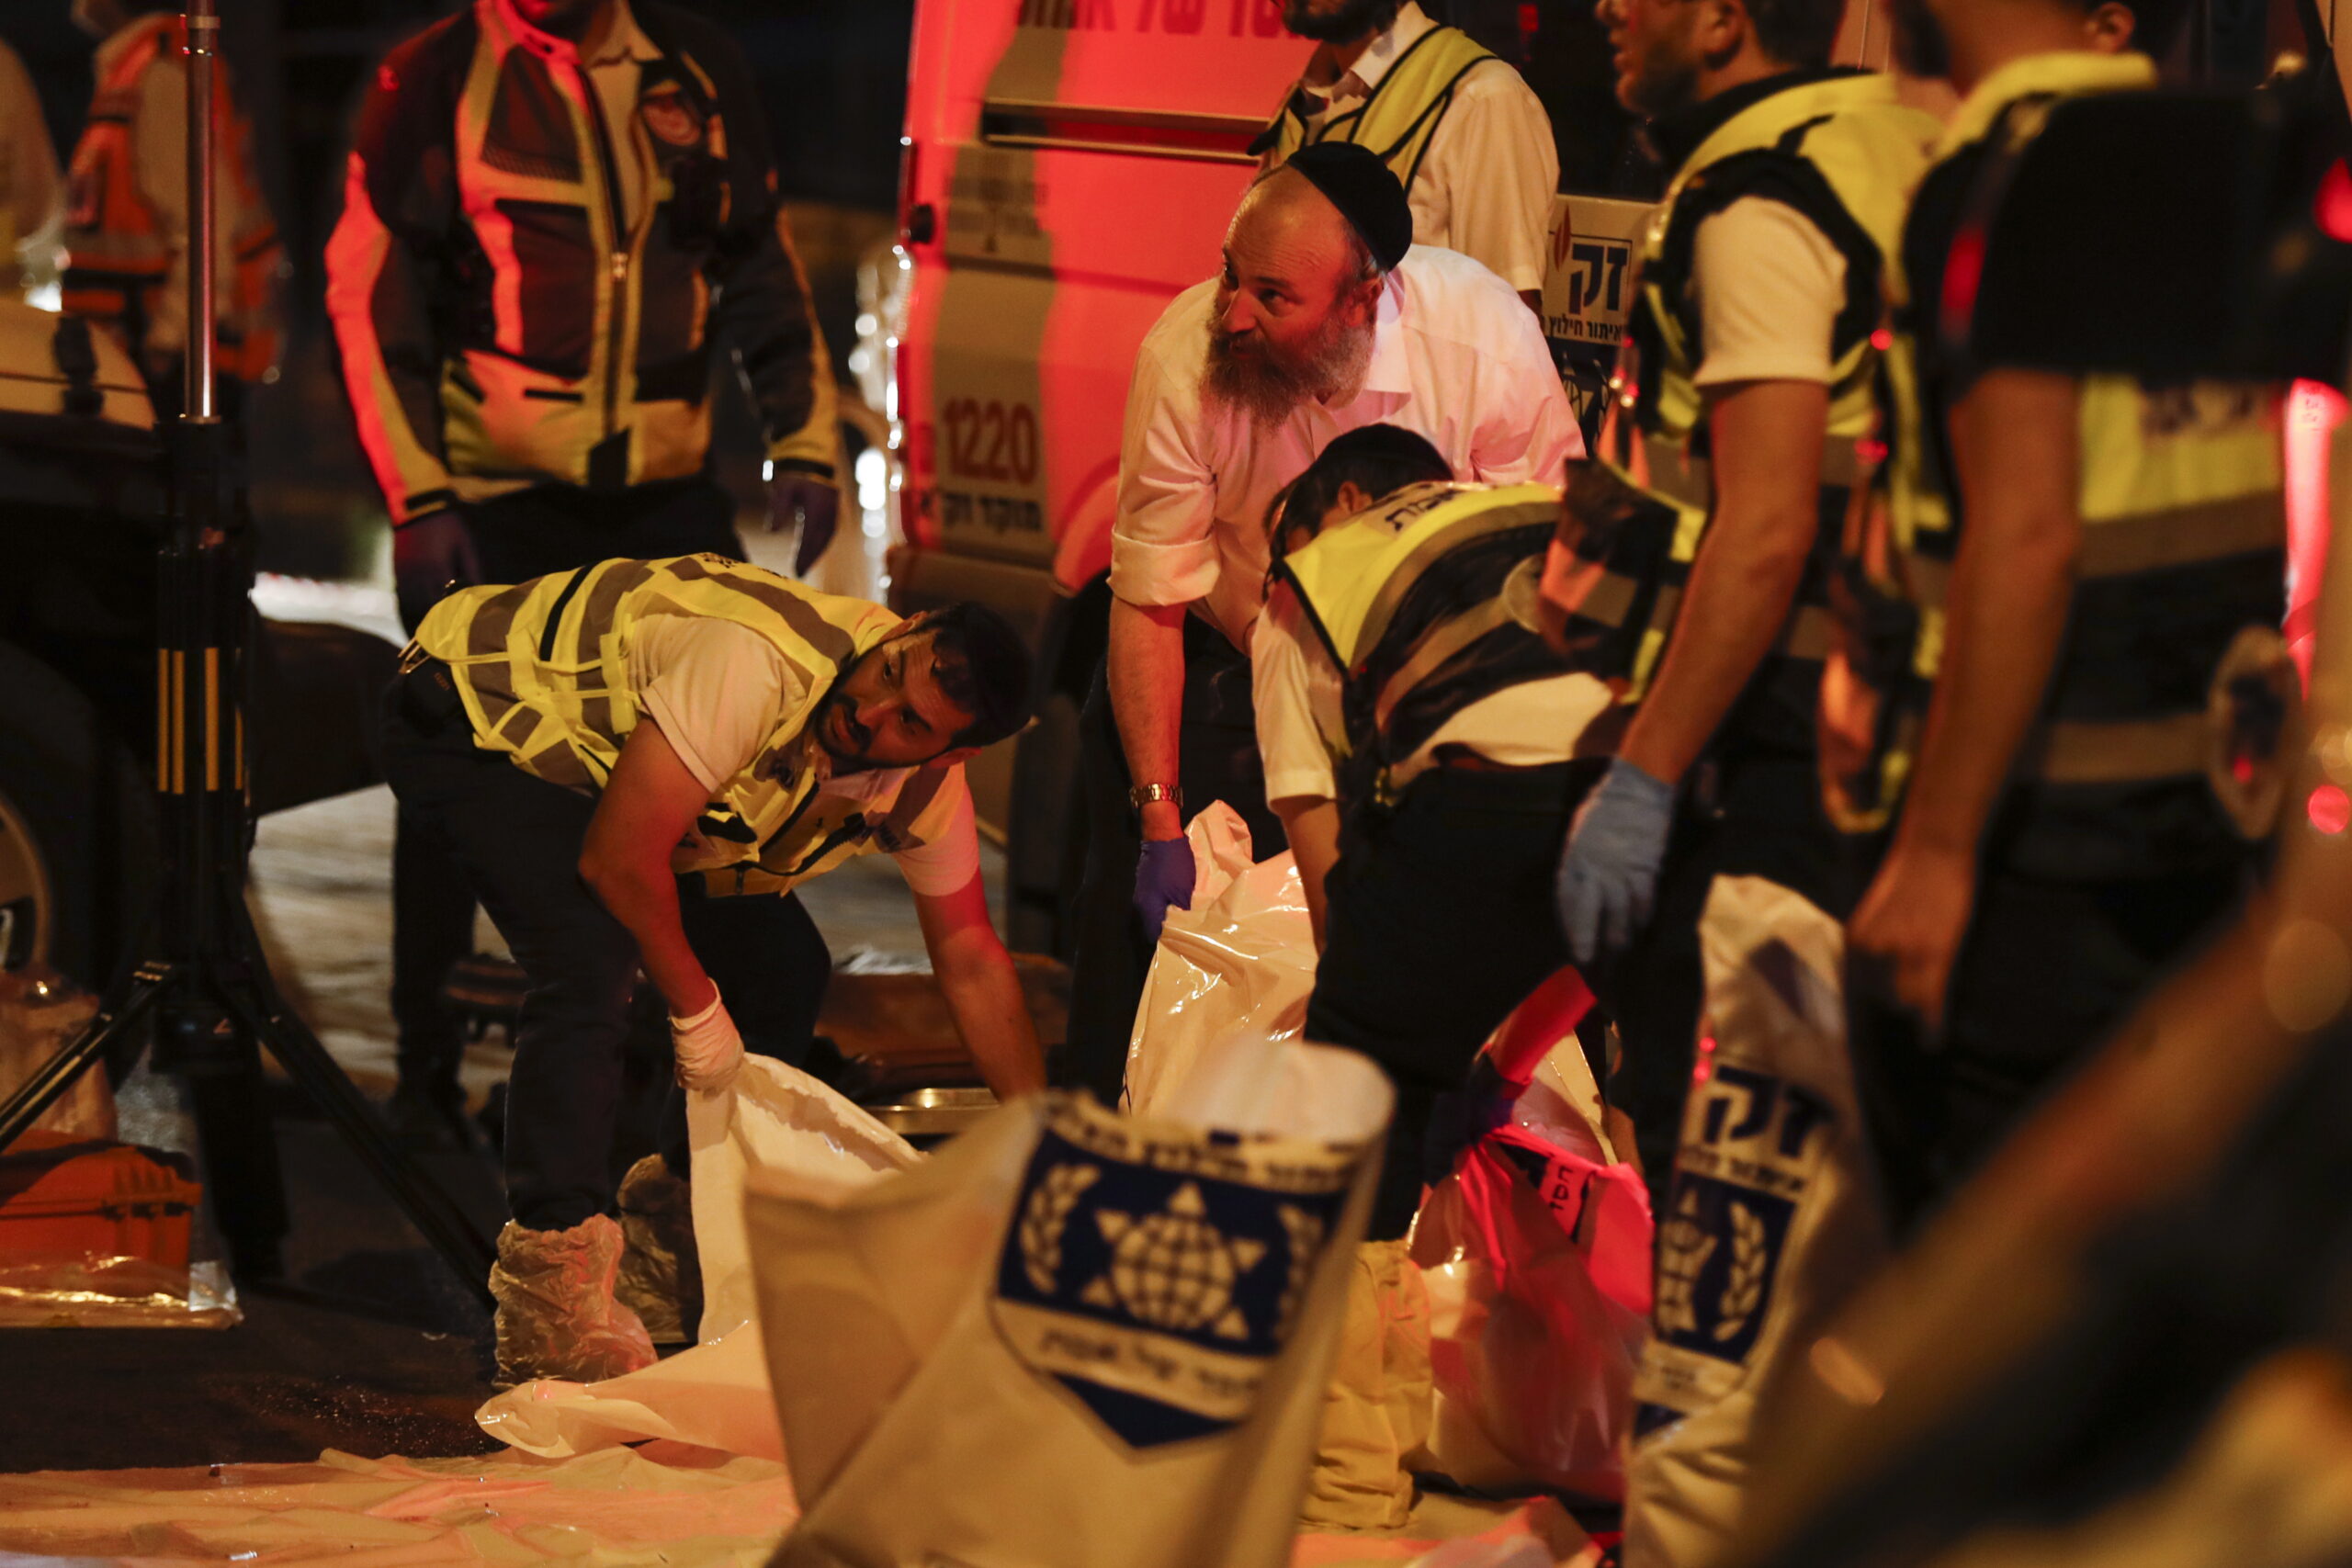 Lövöldözés volt Tel Avivban, sebesültek